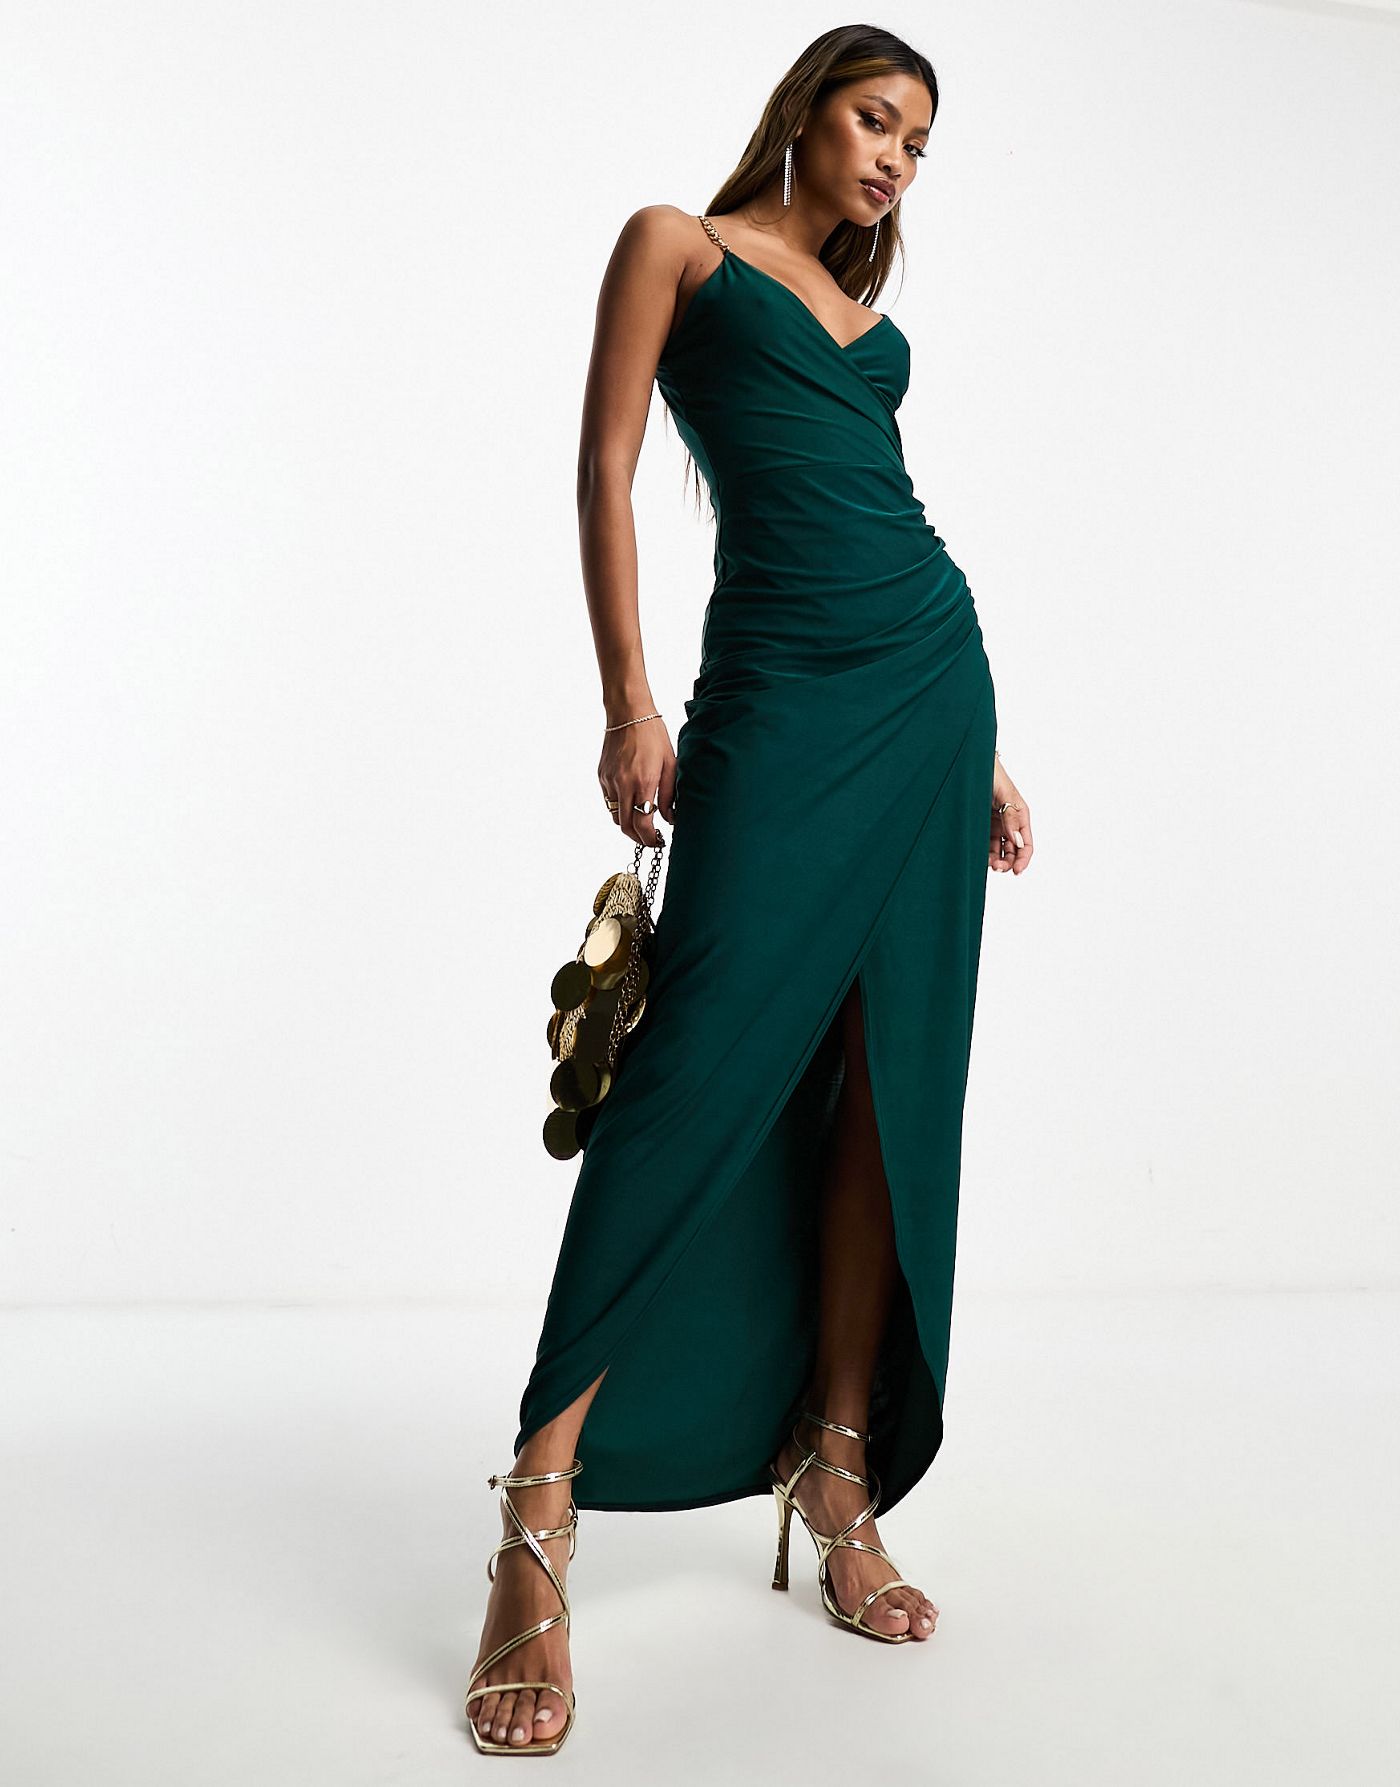 AX Paris chain strap detail wrap maxi dress in emerald green